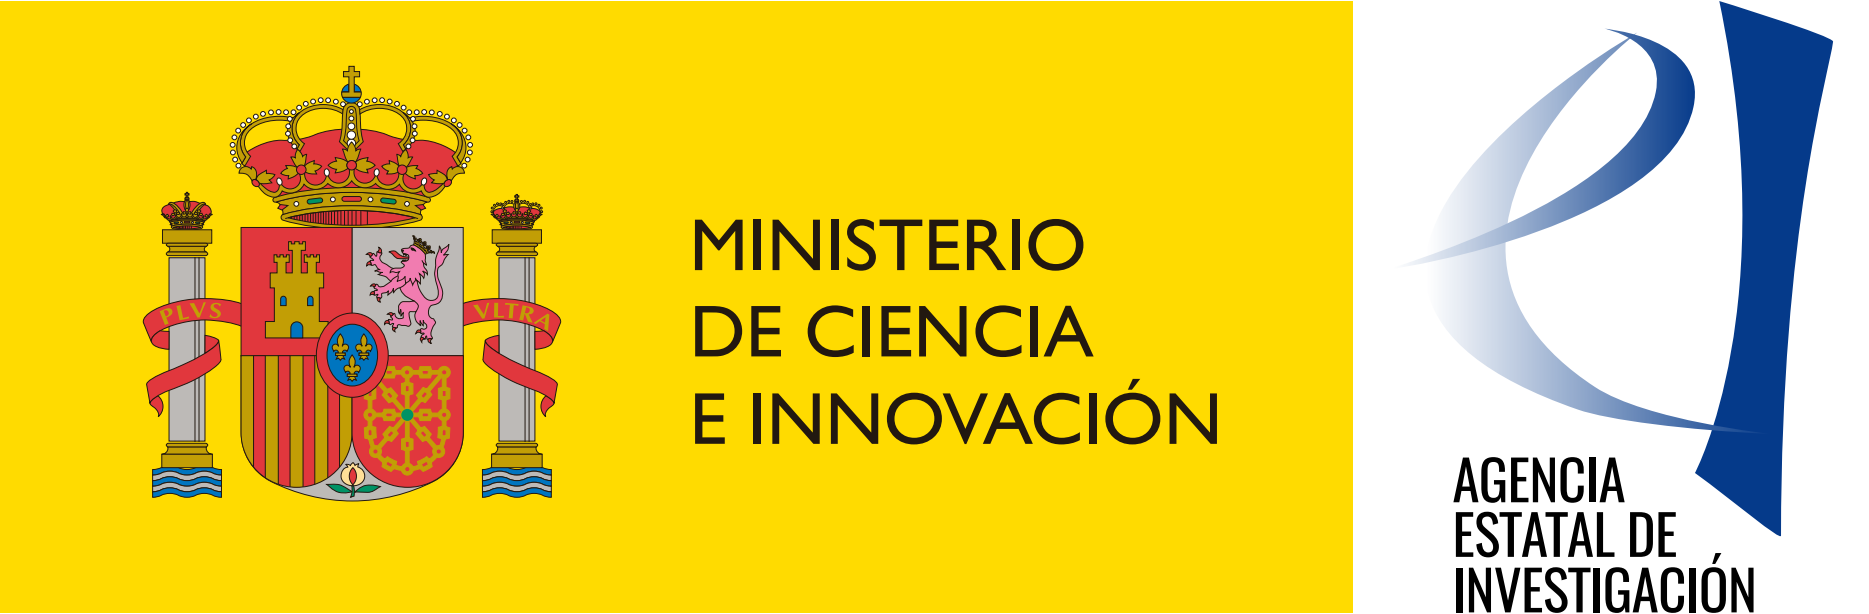 MINISTERIO DE CIENCIA E INNOVACIÓN/AEI